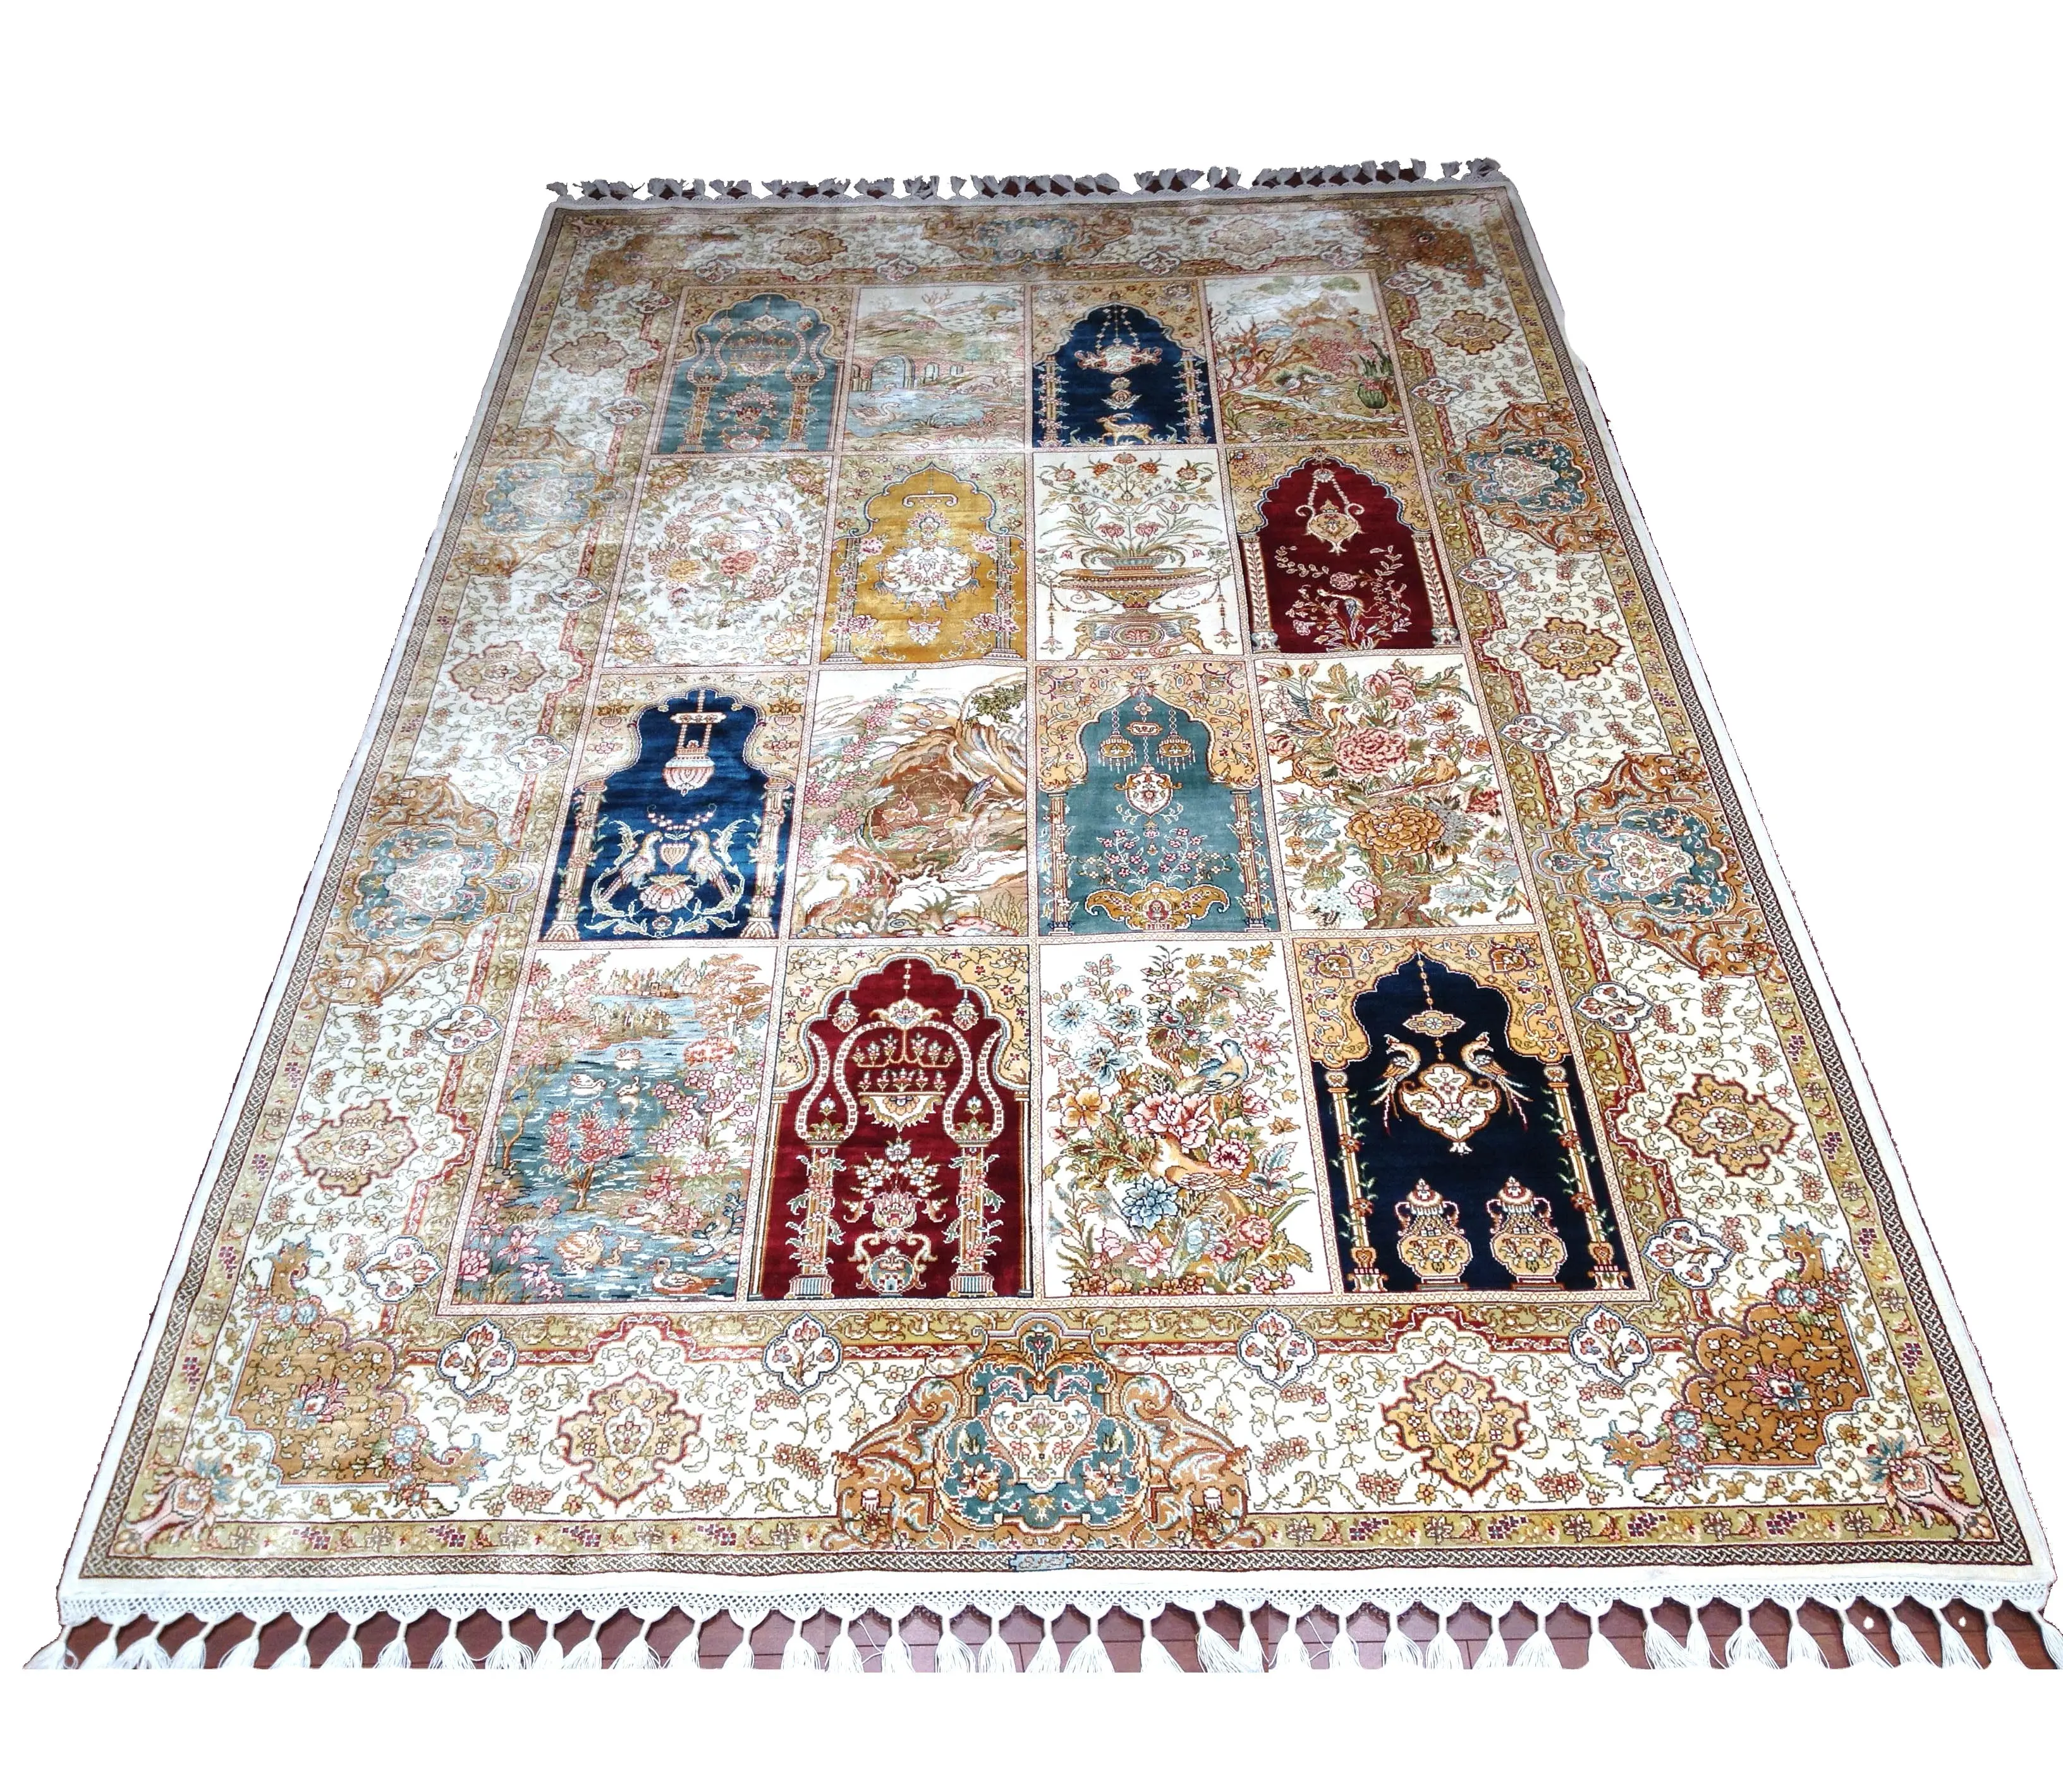 Karpet Sutra Buatan Tangan Suku Persia Desainer Empat Musim Turki 170X240Cm Karpet Dekorasi Doa Dalam Ruangan Luar Ruangan